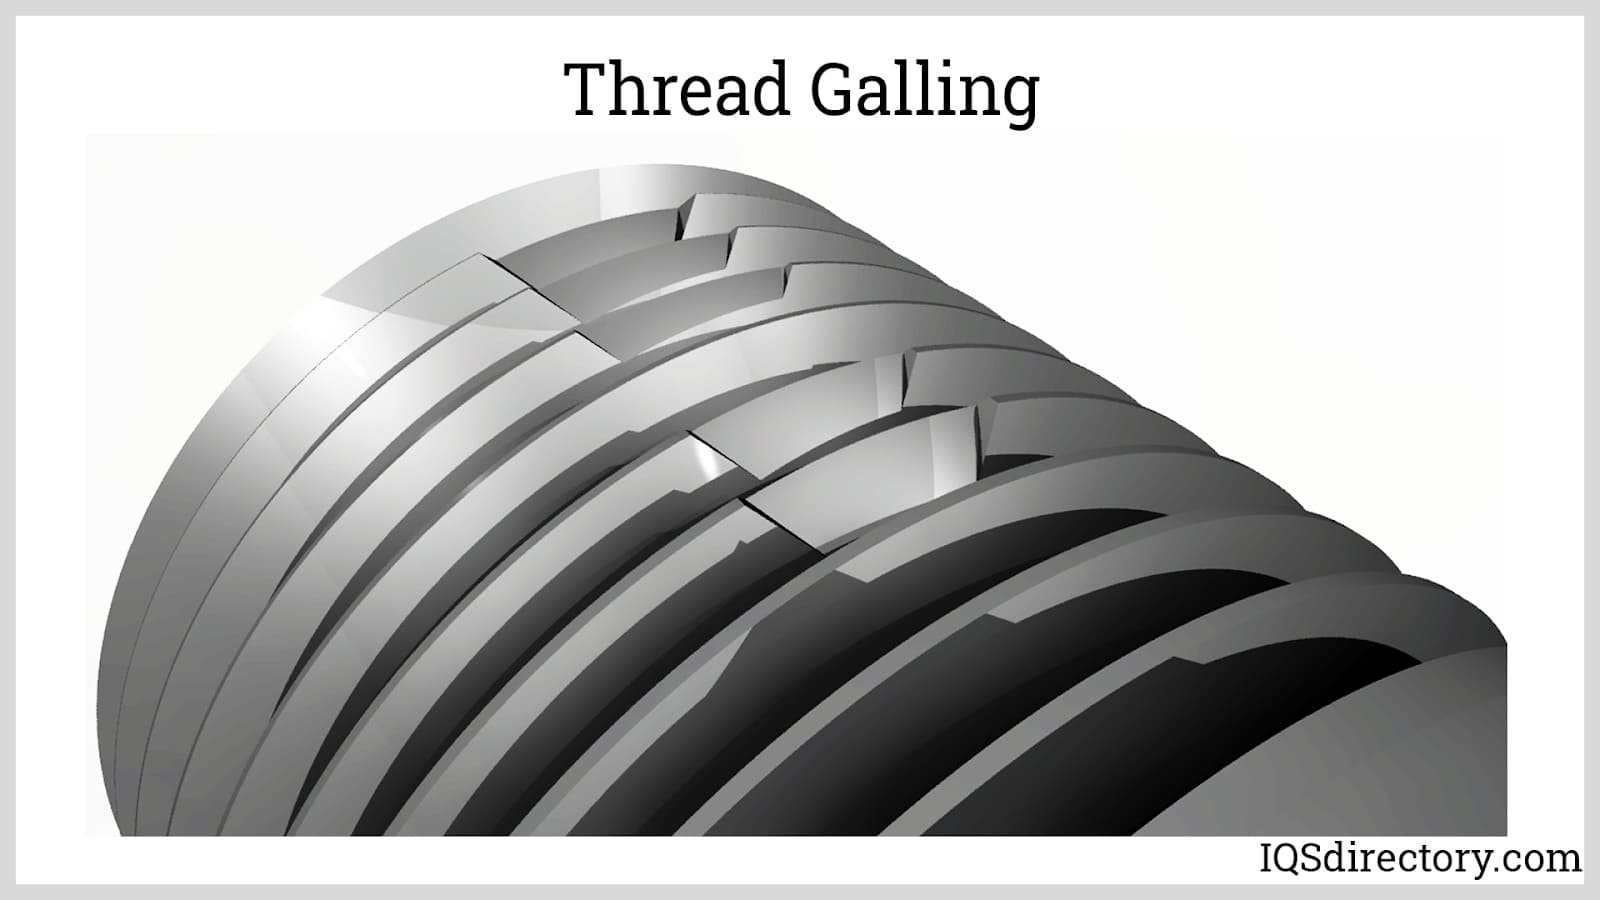 Thread Galling